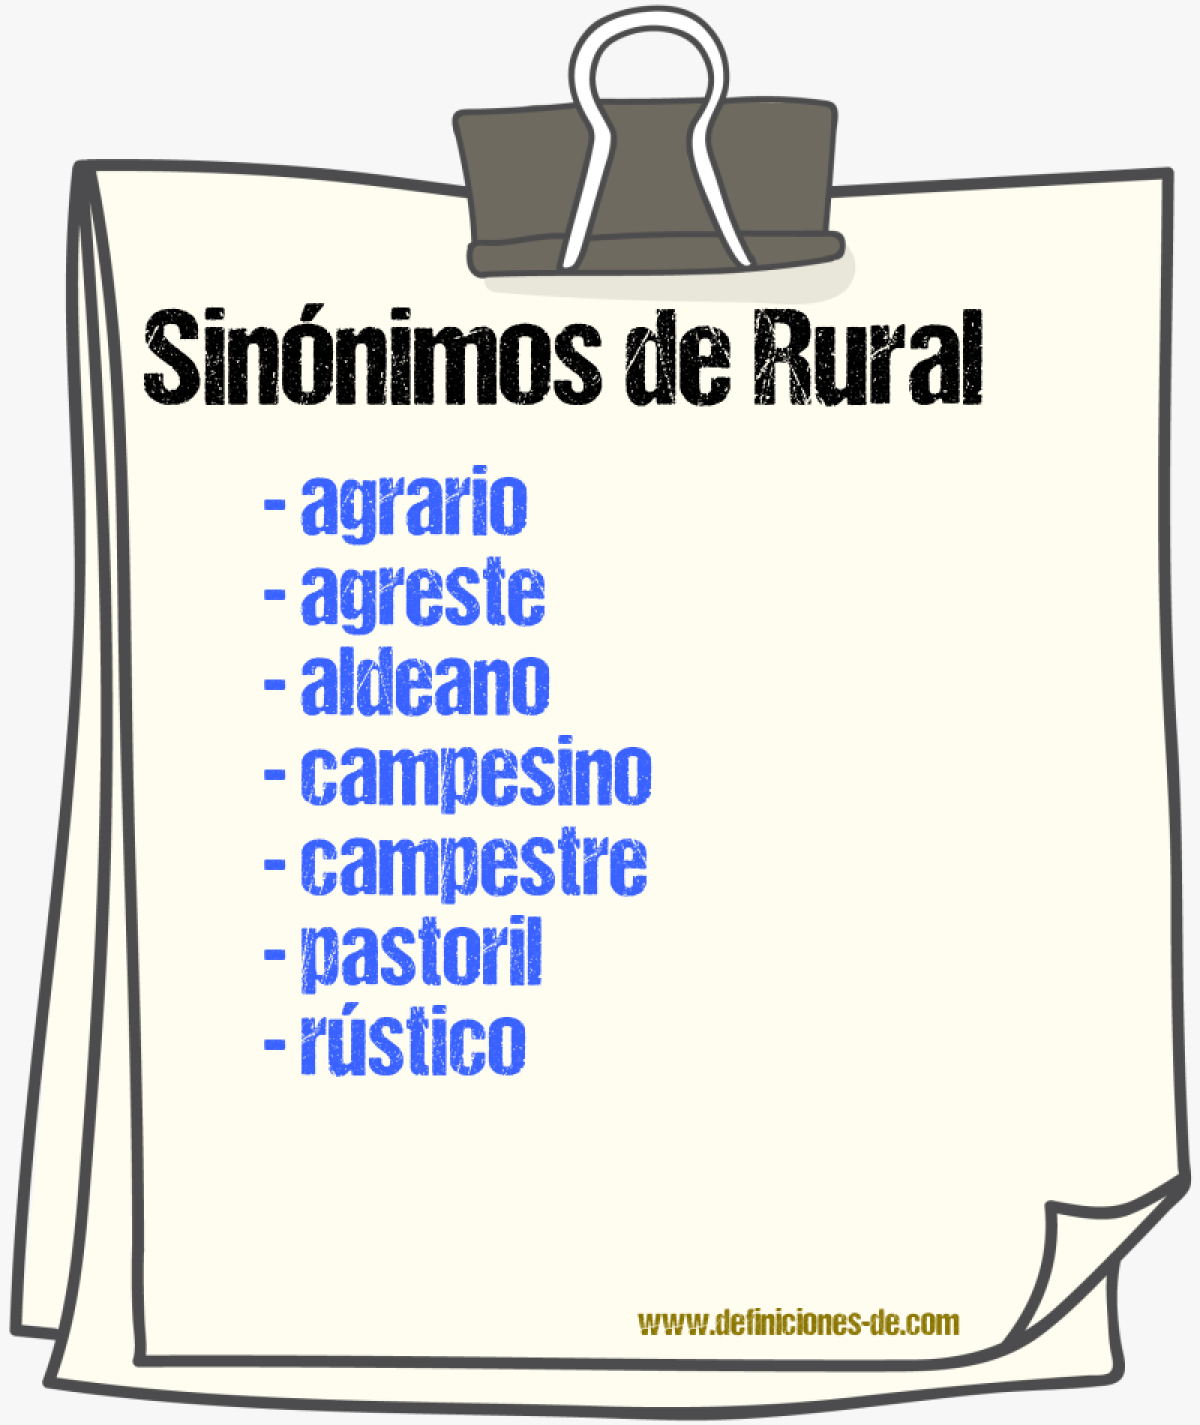 Sinónimos de rural